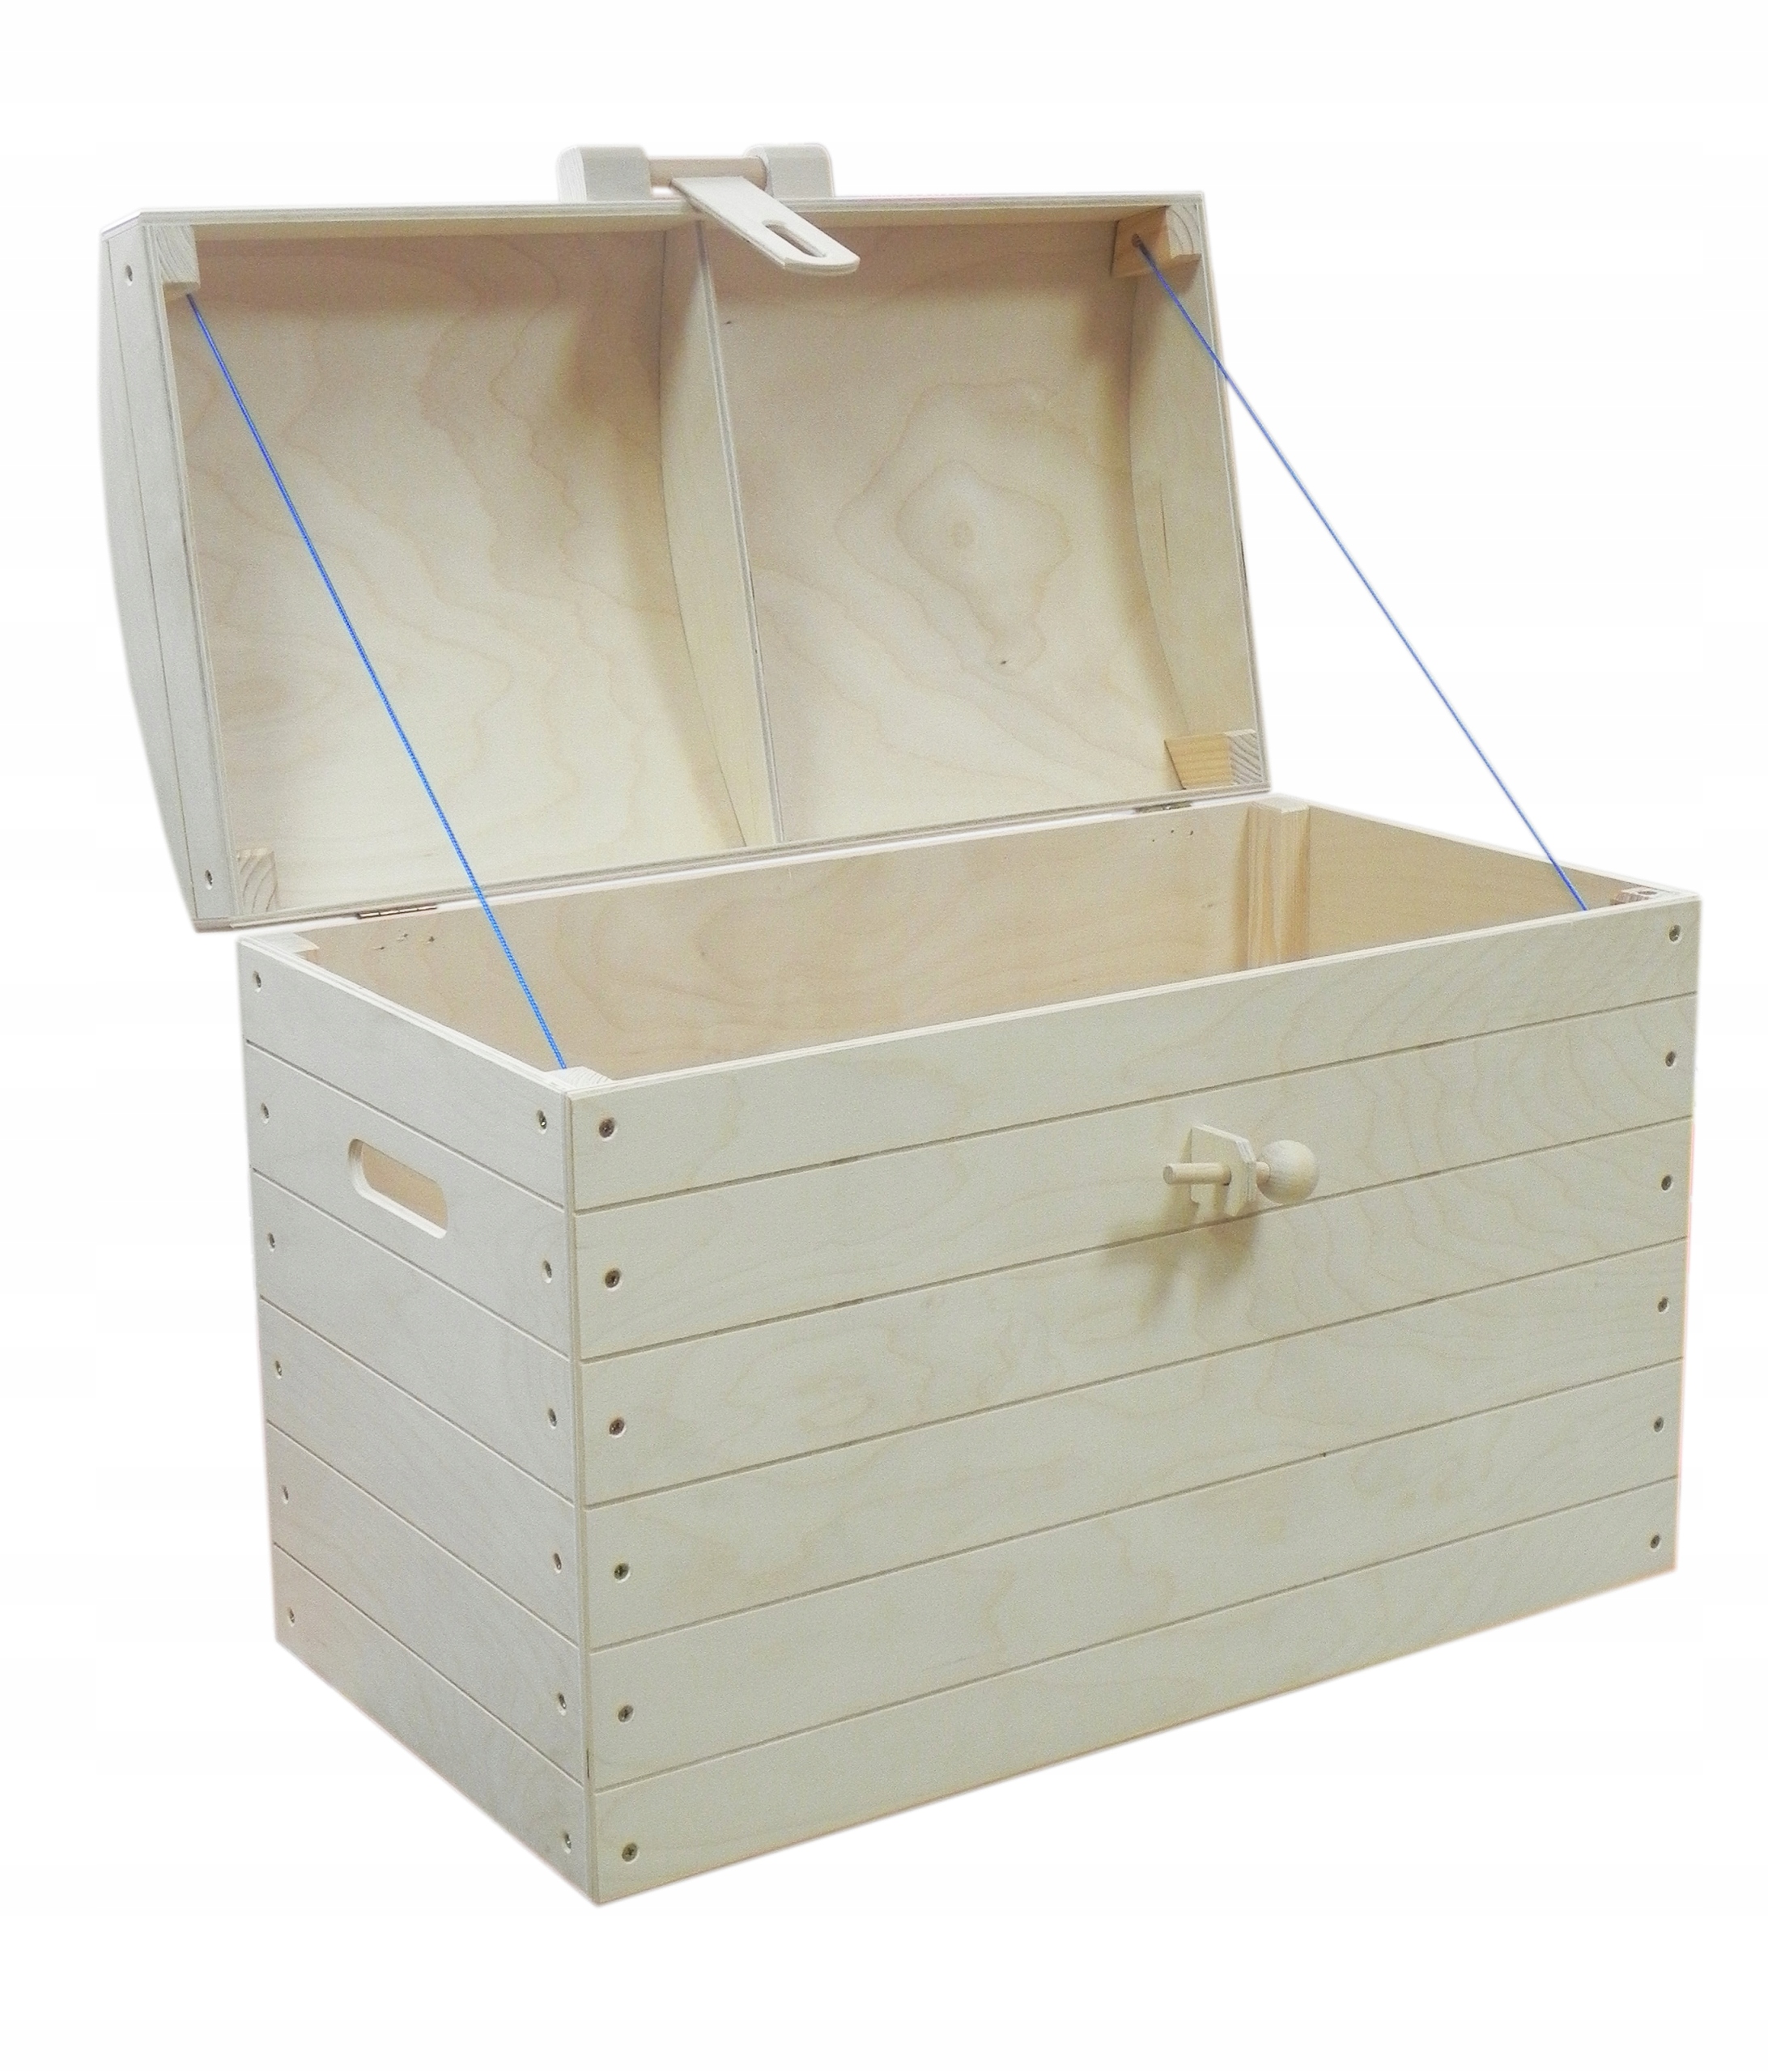 Деревянная коробка с крышкой. Сундук для игрушек деревянный. Деревянный ящик с крышкой. Деревянные ящик для игрушек. Сундук для игрушек деревянный с крышкой.